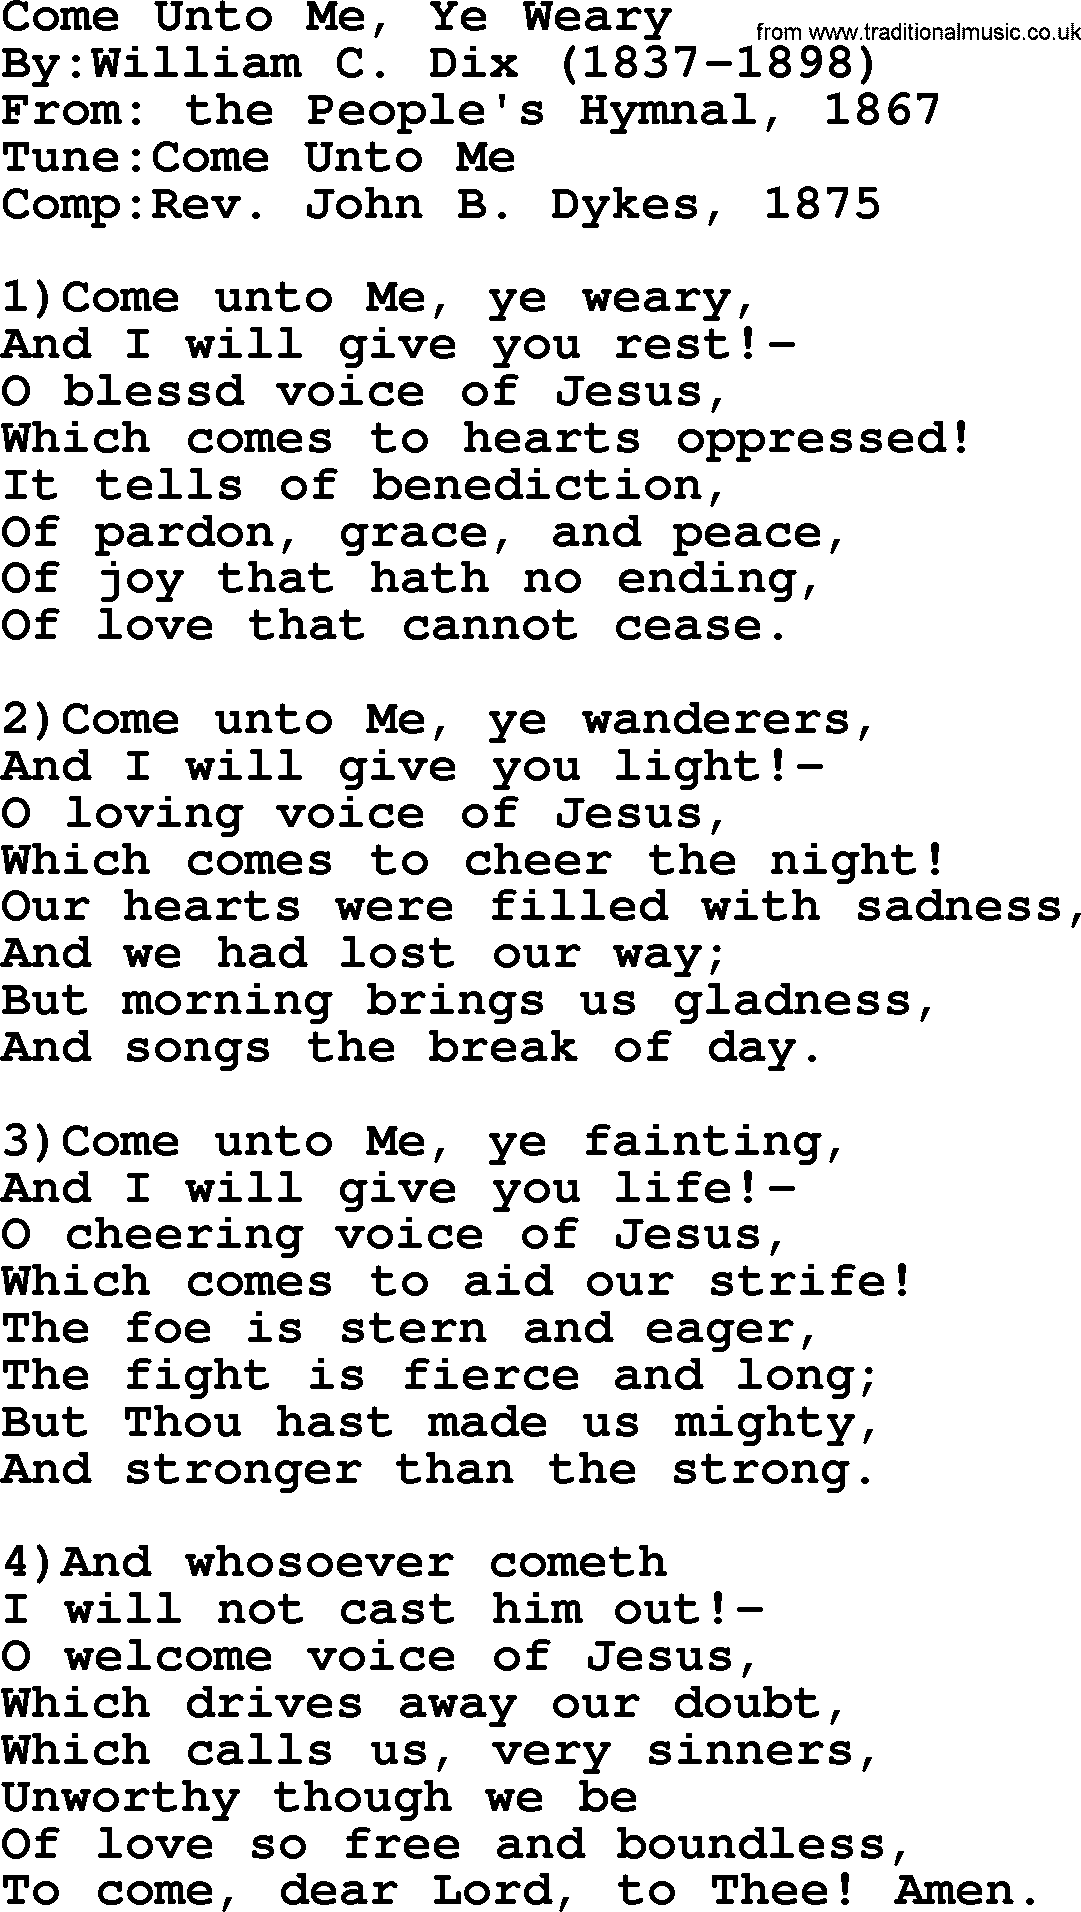 Methodist Hymn: Come Unto Me, Ye Weary, lyrics